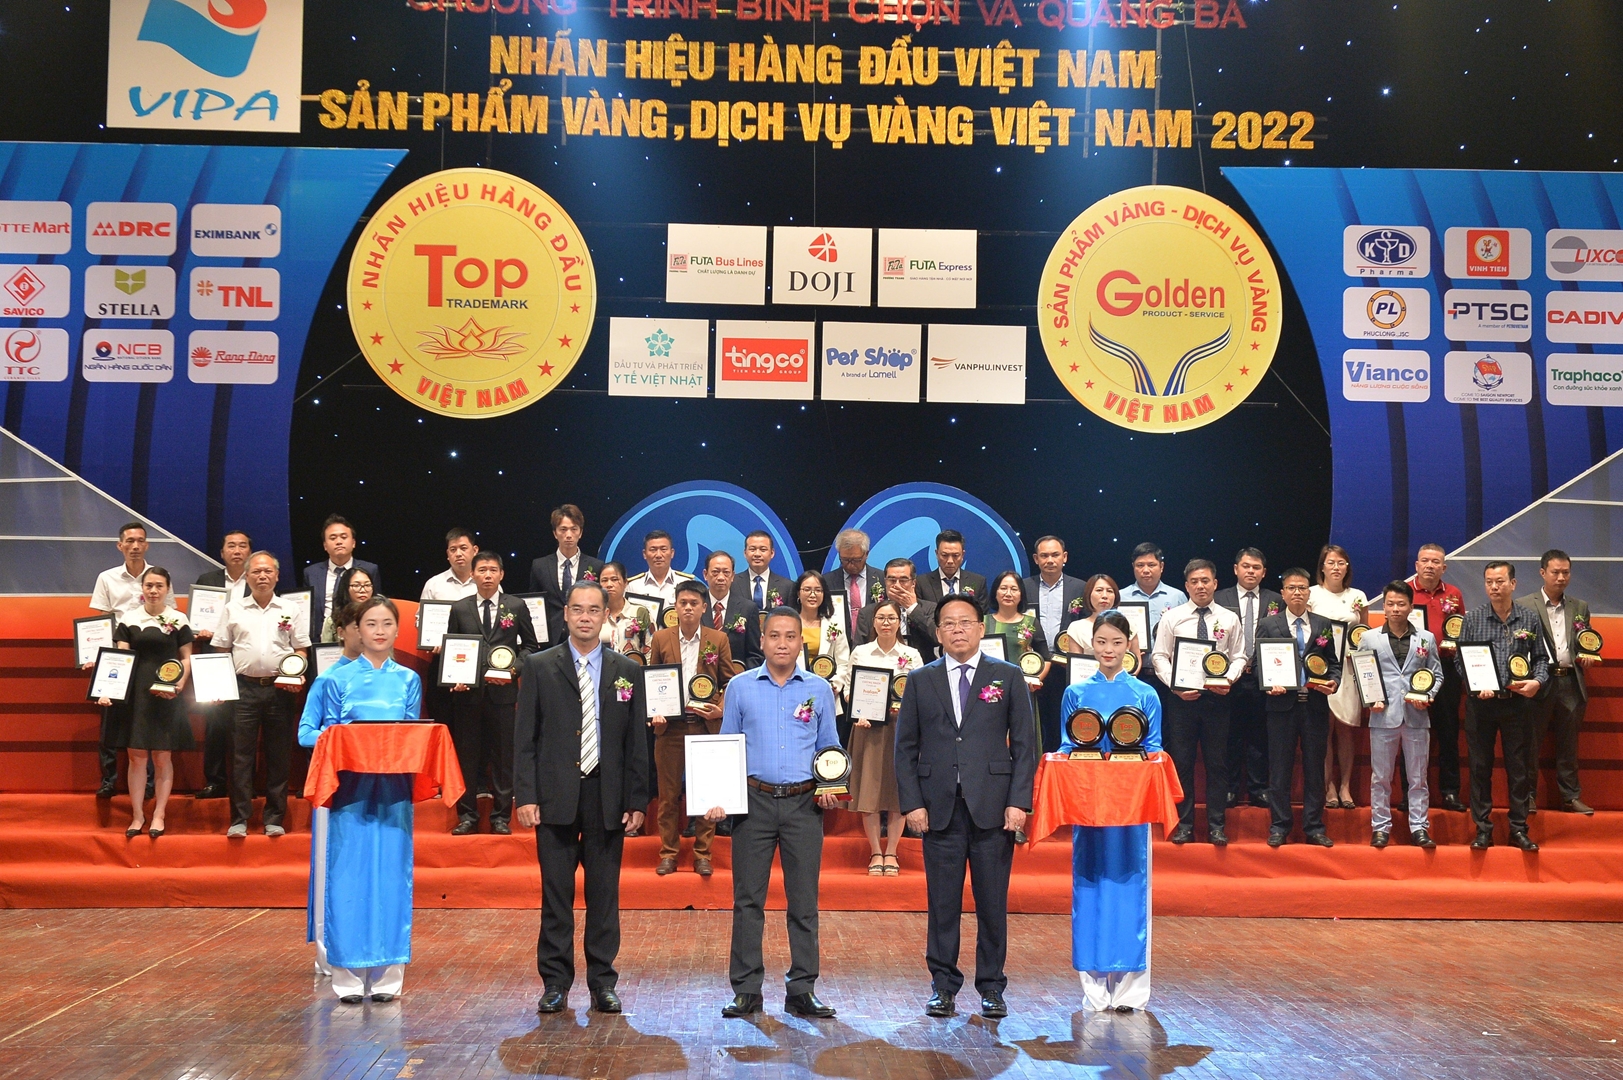 VINH DANH VIFASPORT LÀ TOP 50 NHÃN HIỆU HÀNG ĐẦU &TOP 10 SẢN PHẨM VÀNG VIỆT NAM 2022